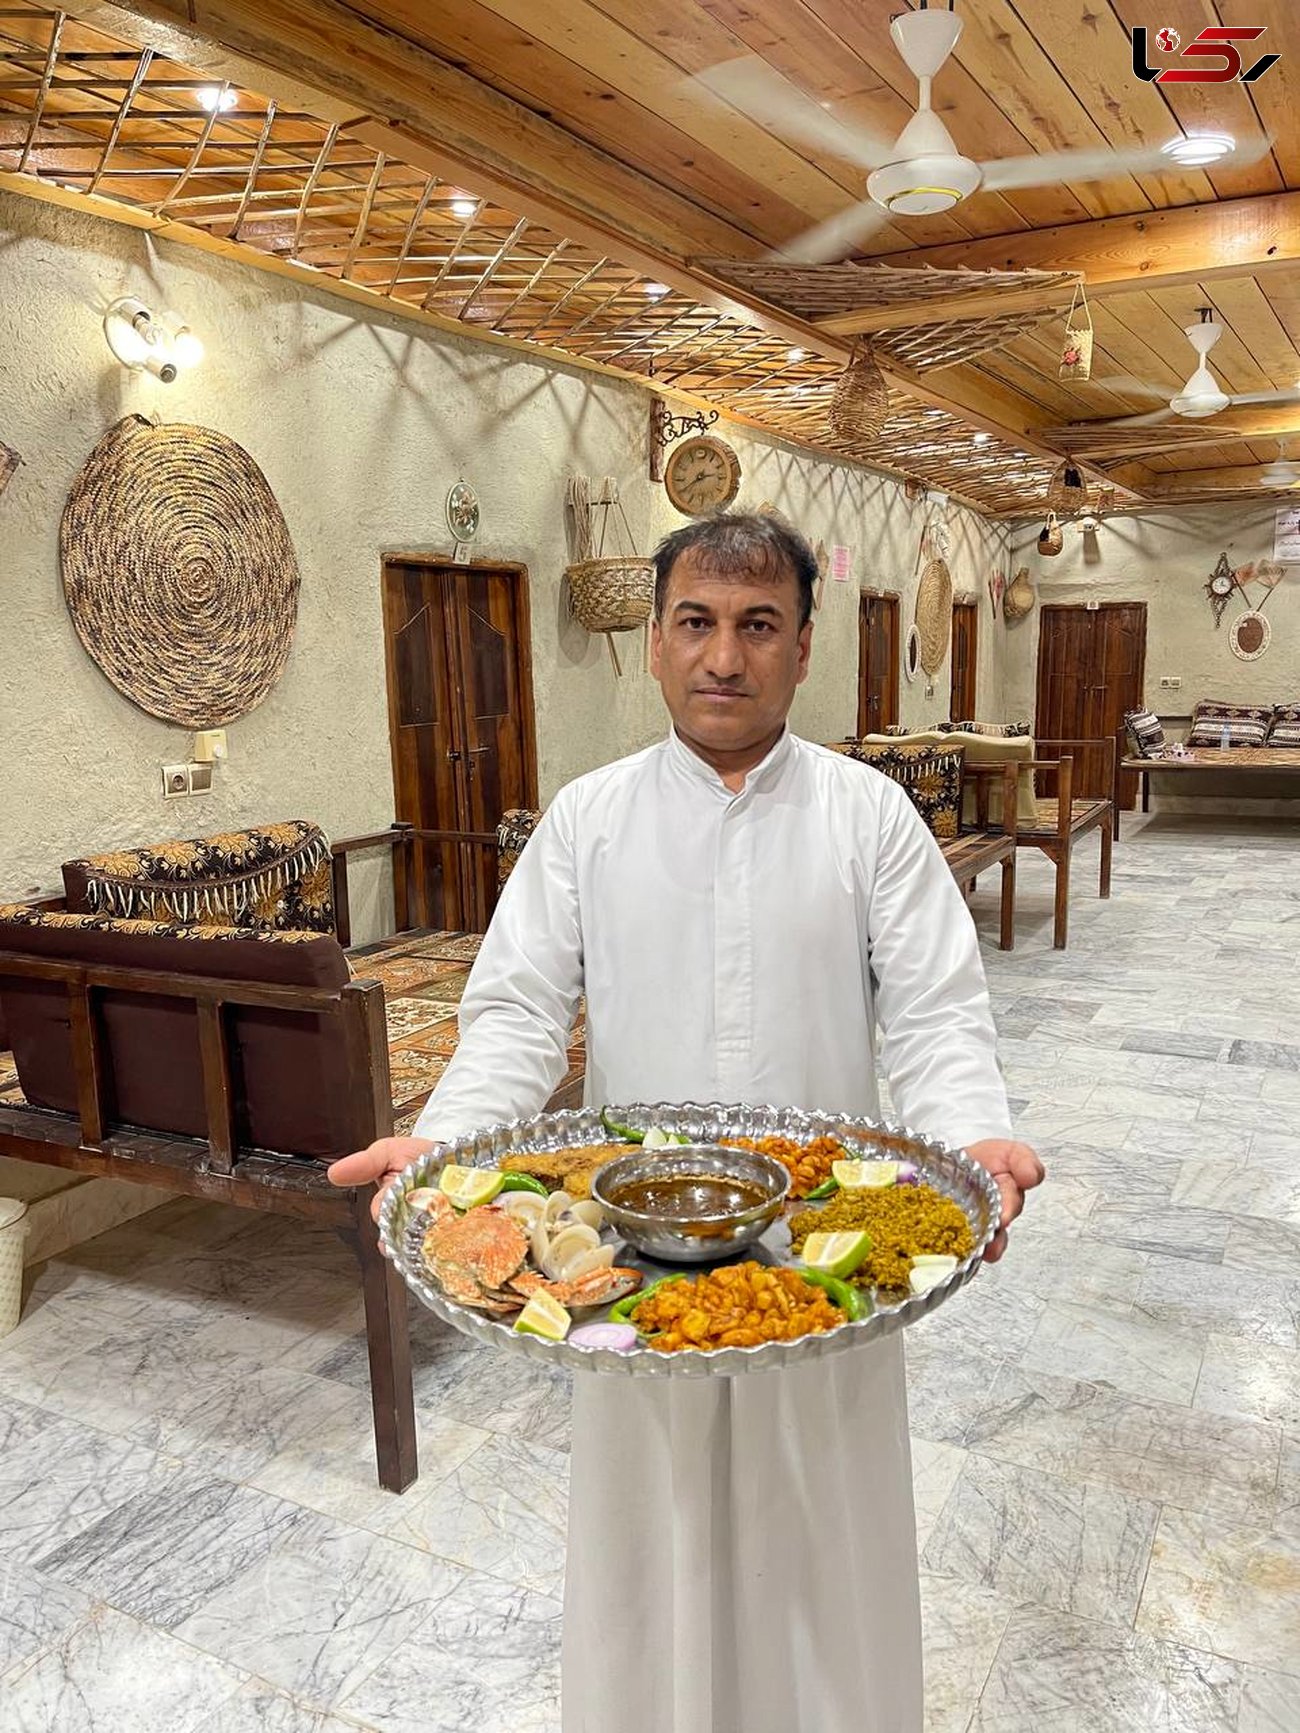 قشم رفتین رستوران ناخدا علی صالح را از دست ندهید!